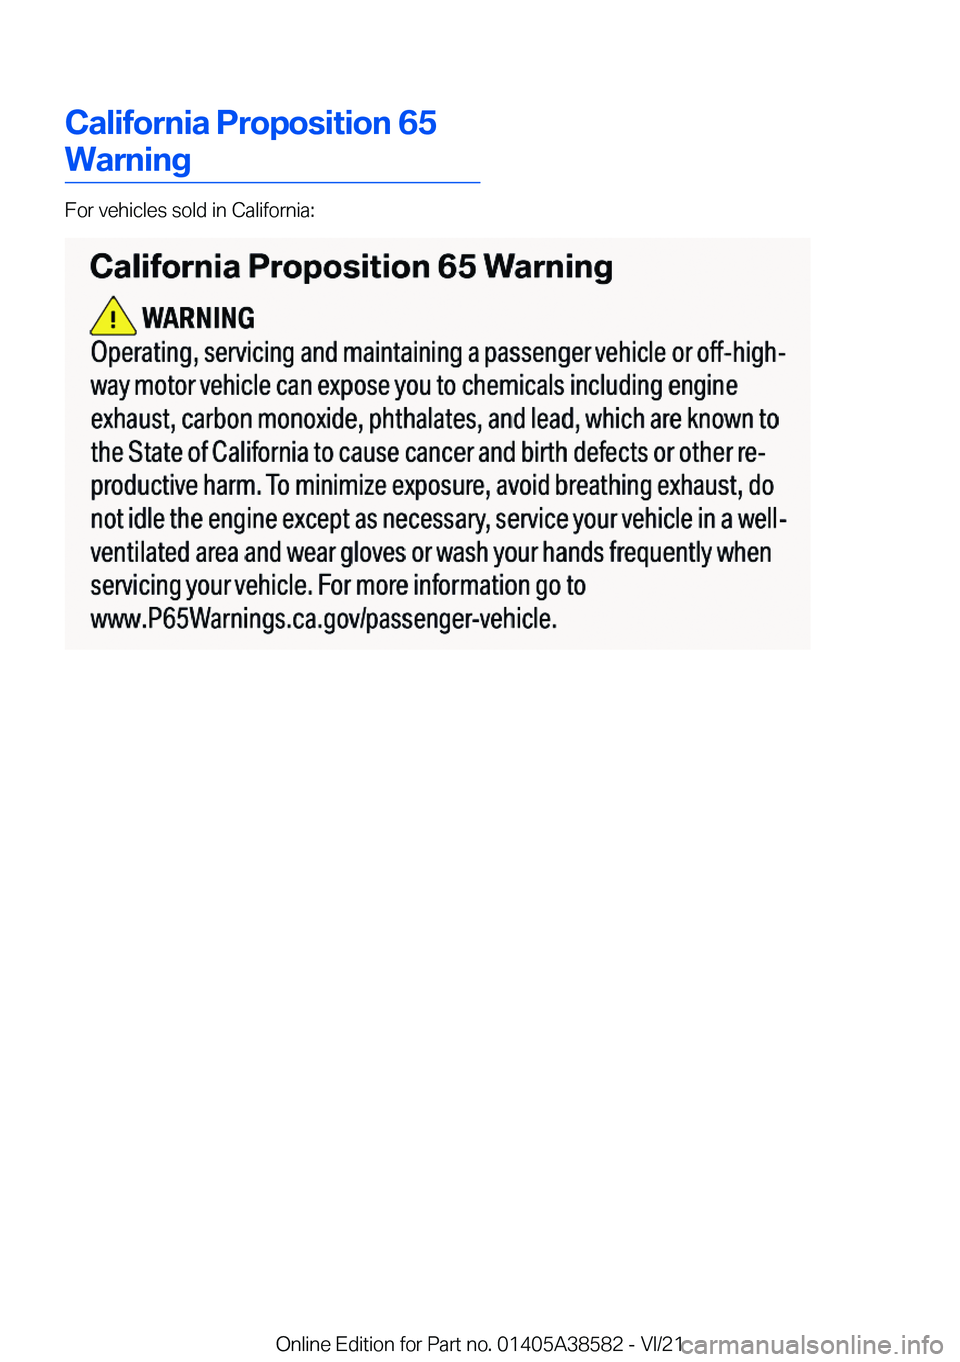 BMW X6 2022  Owners Manual �C�a�l�i�f�o�r�n�i�a��P�r�o�p�o�s�i�t�i�o�n��6�5
�W�a�r�n�i�n�g
�F�o�r��v�e�h�i�c�l�e�s��s�o�l�d��i�n��C�a�l�i�f�o�r�n�i�a�:
�O�n�l�i�n�e��E�d�i�t�i�o�n��f�o�r��P�a�r�t��n�o�.��0�1�4�0�5�A�